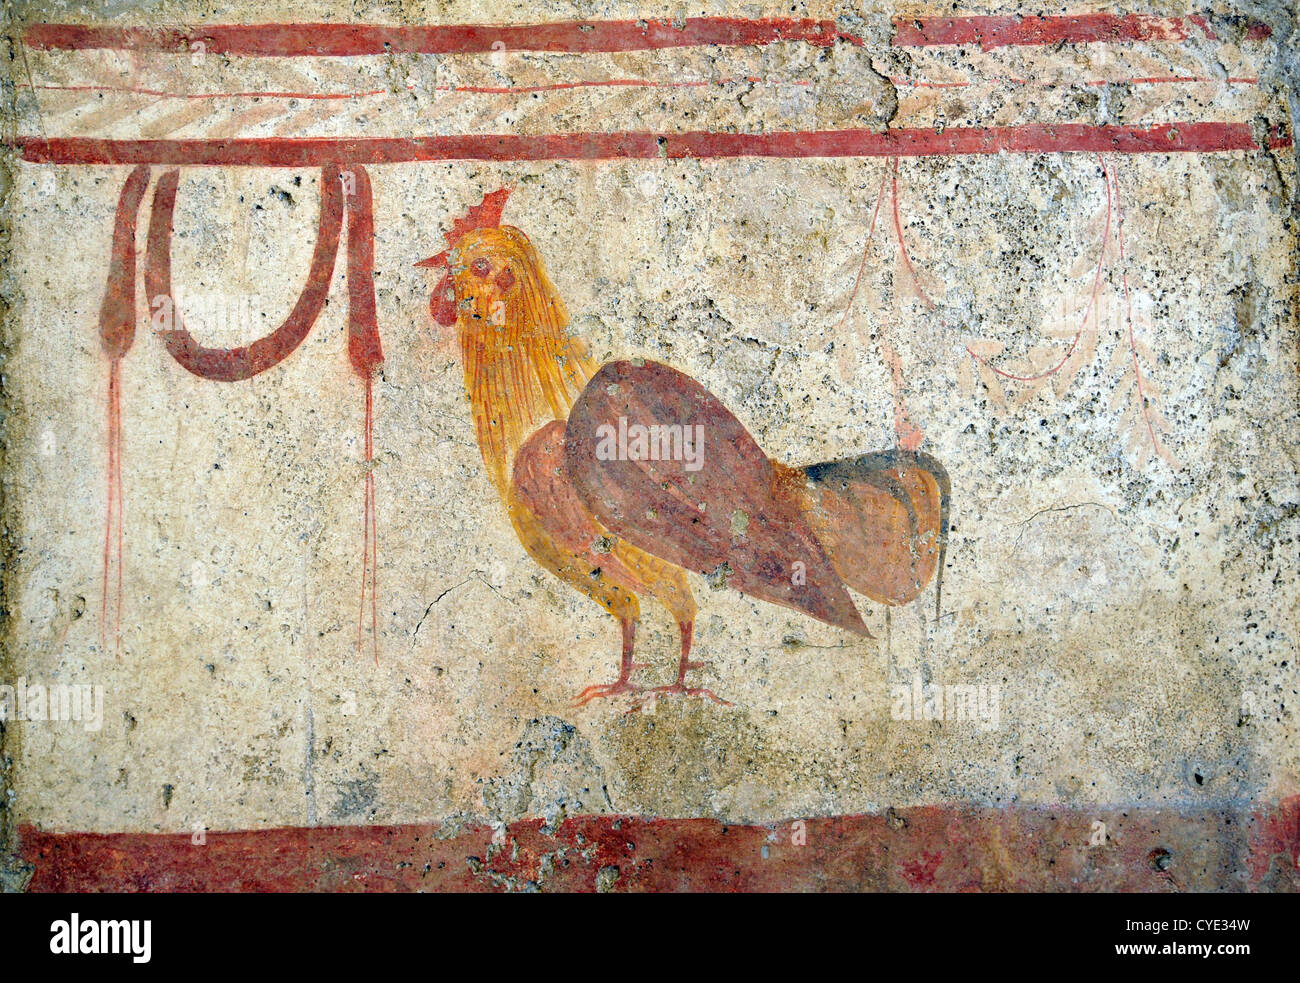 Coq et le SWAG, dalle tombeau grec c.350 BC, le musée de Paestum, site de vestiges romains et grecs, Italie Banque D'Images